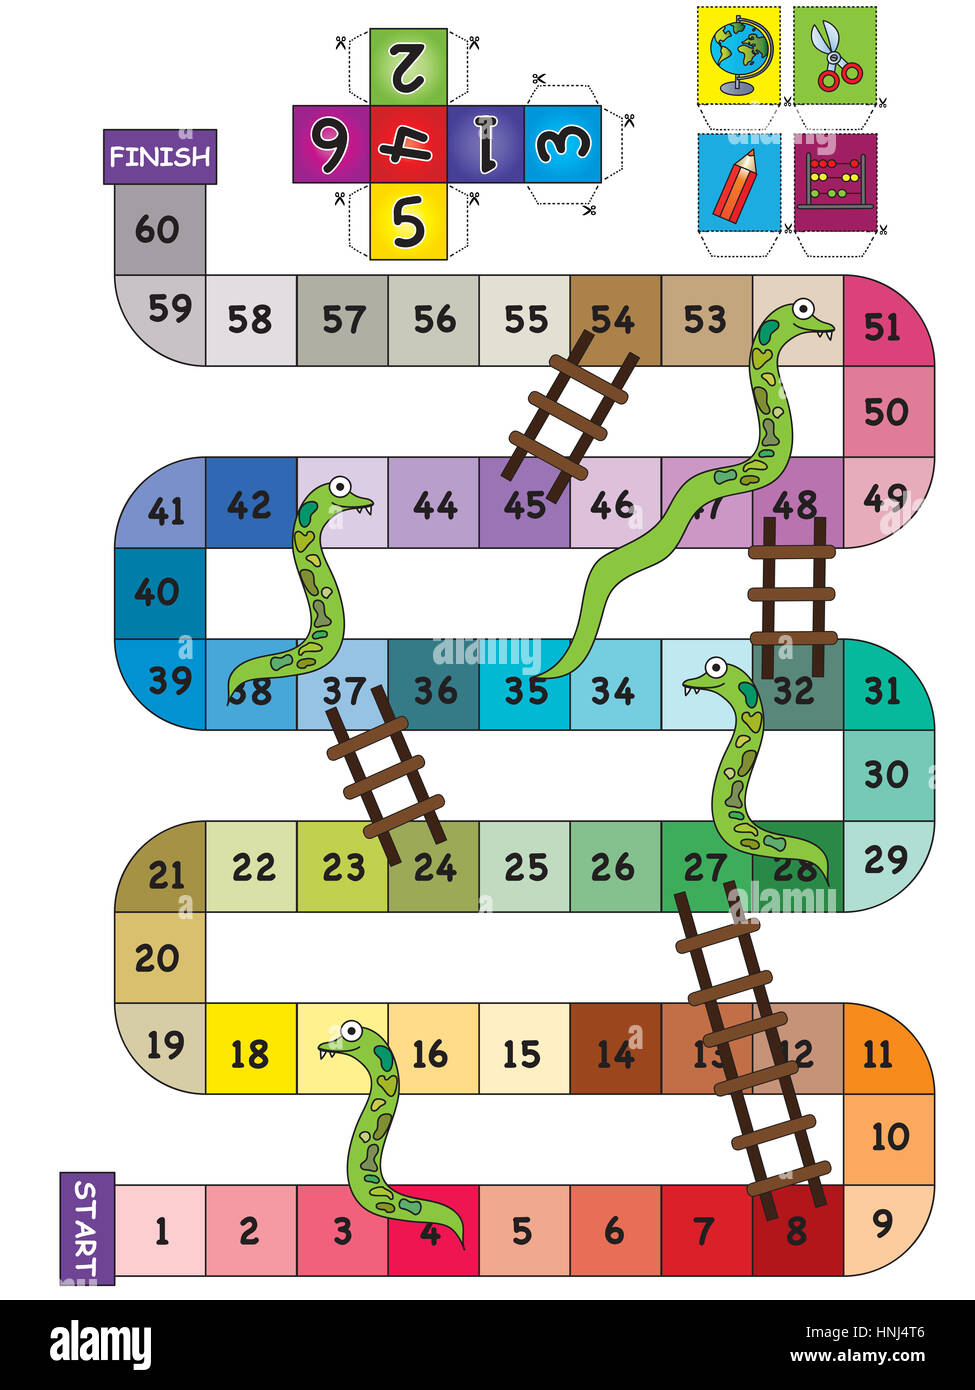 snake & ladder game